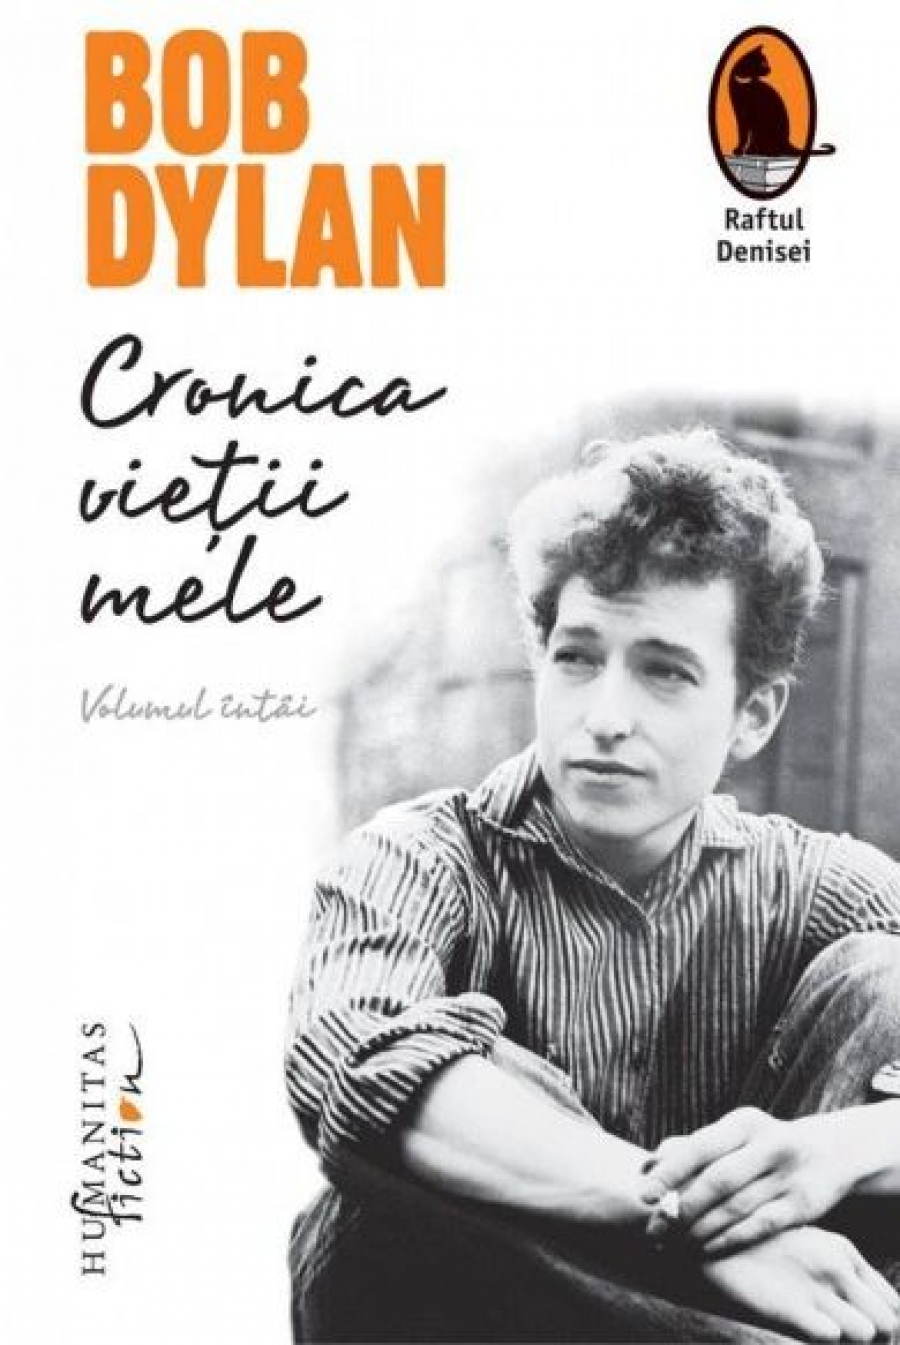 UȘOR DE CITIT! În ”Cronica vieţii mele” - Bob Dylan, despre cum să reuşeşti în viaţă şi artă